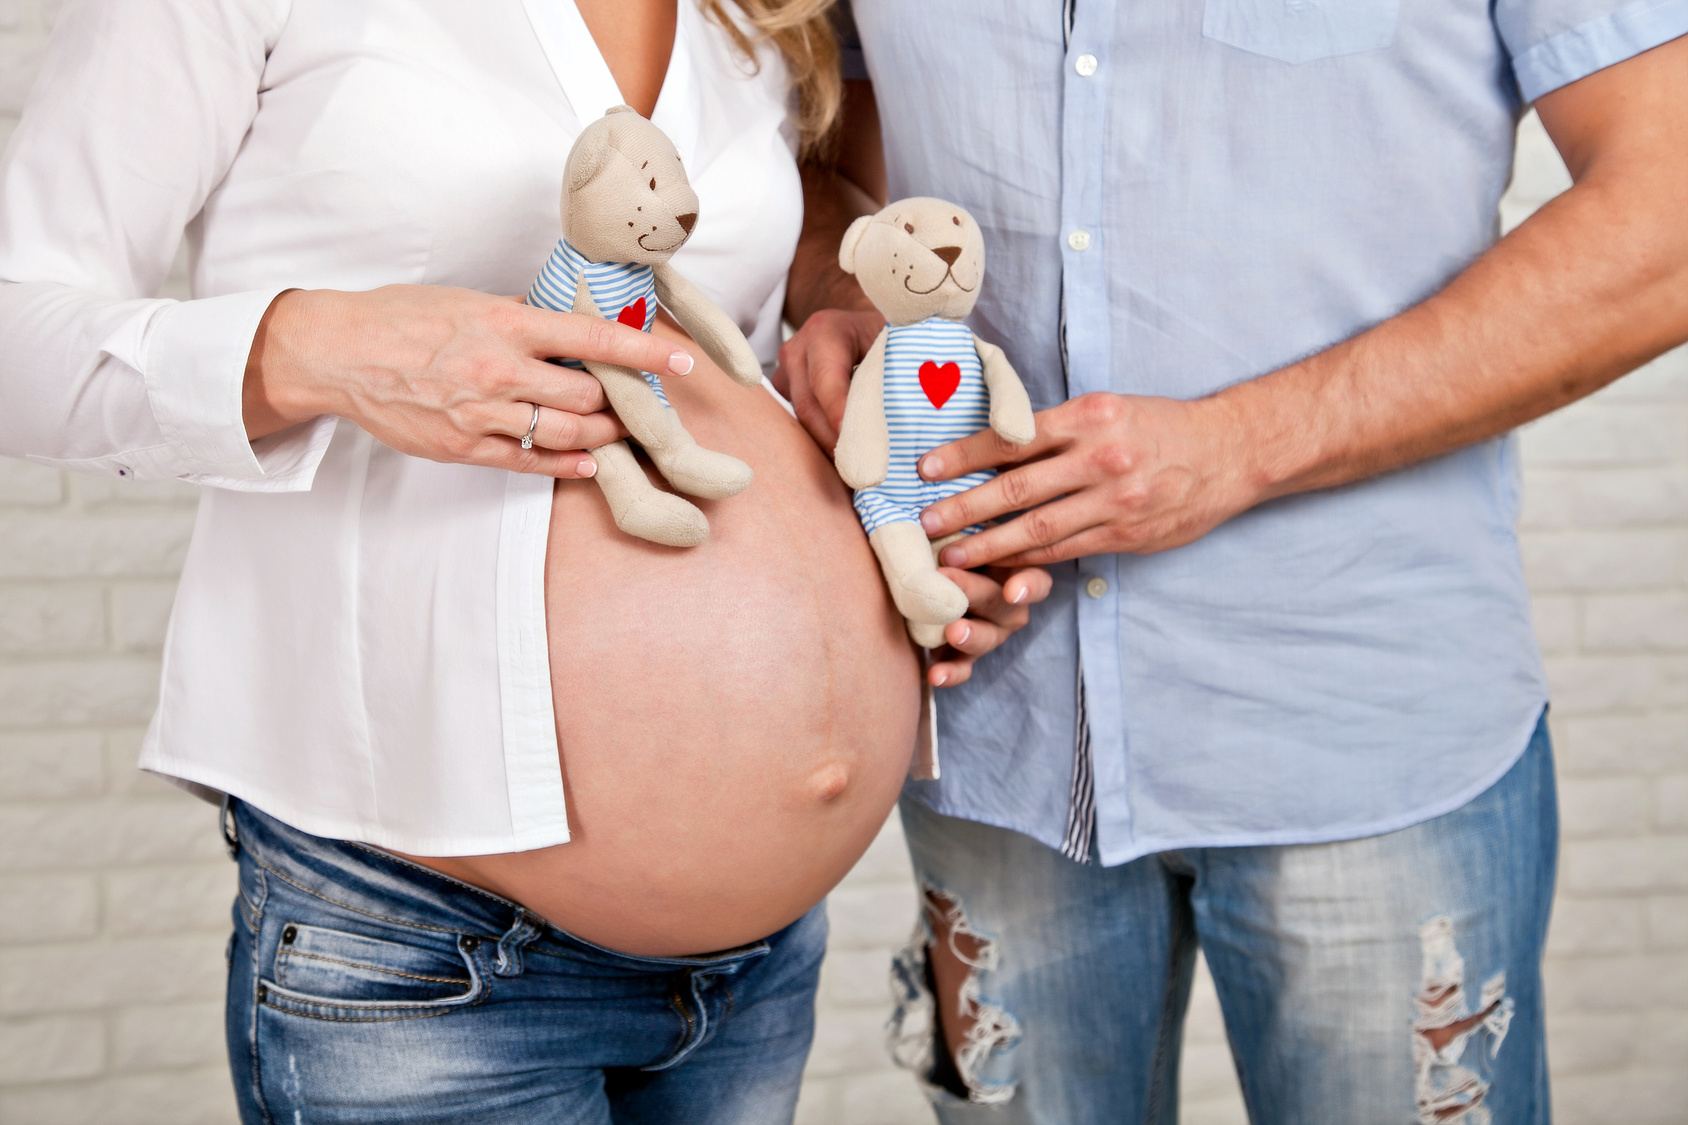 Relación entre reproducción asistida y embarazos múltiples